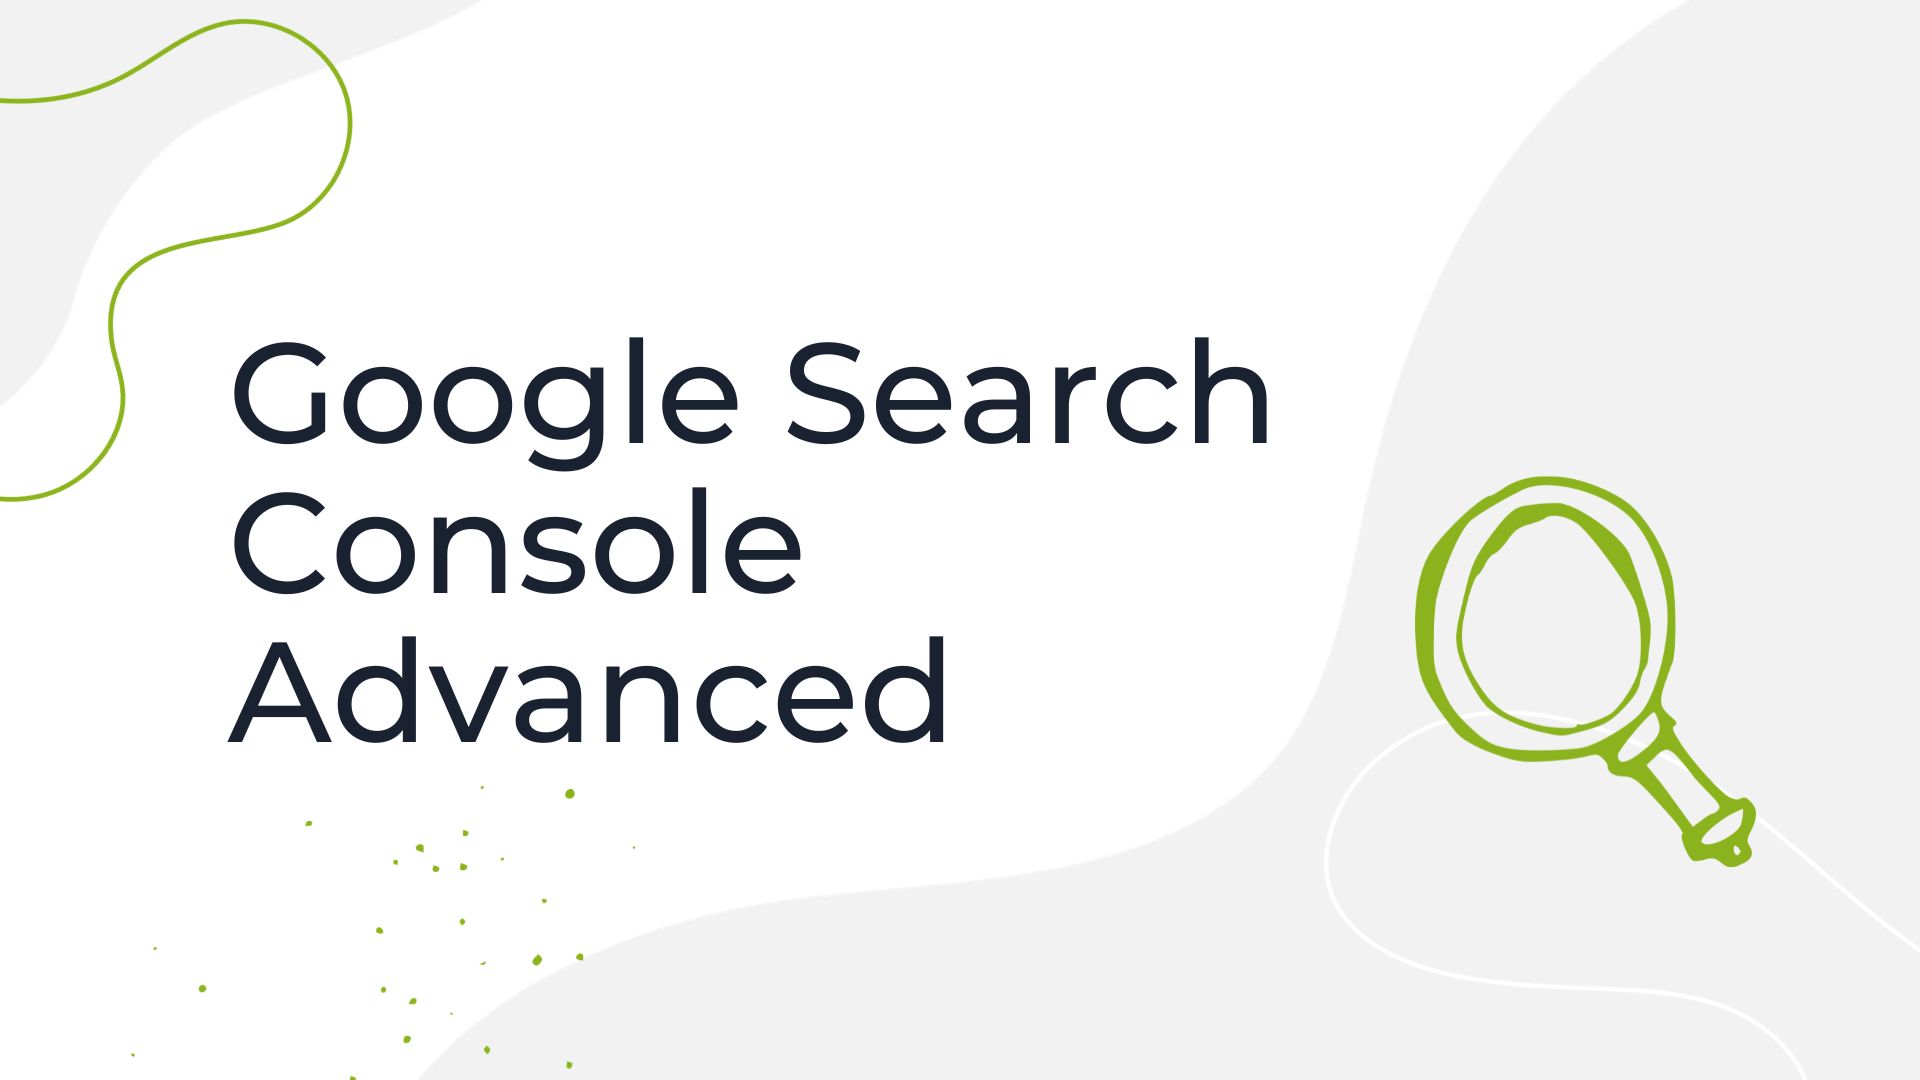 Google Search Console Advanced